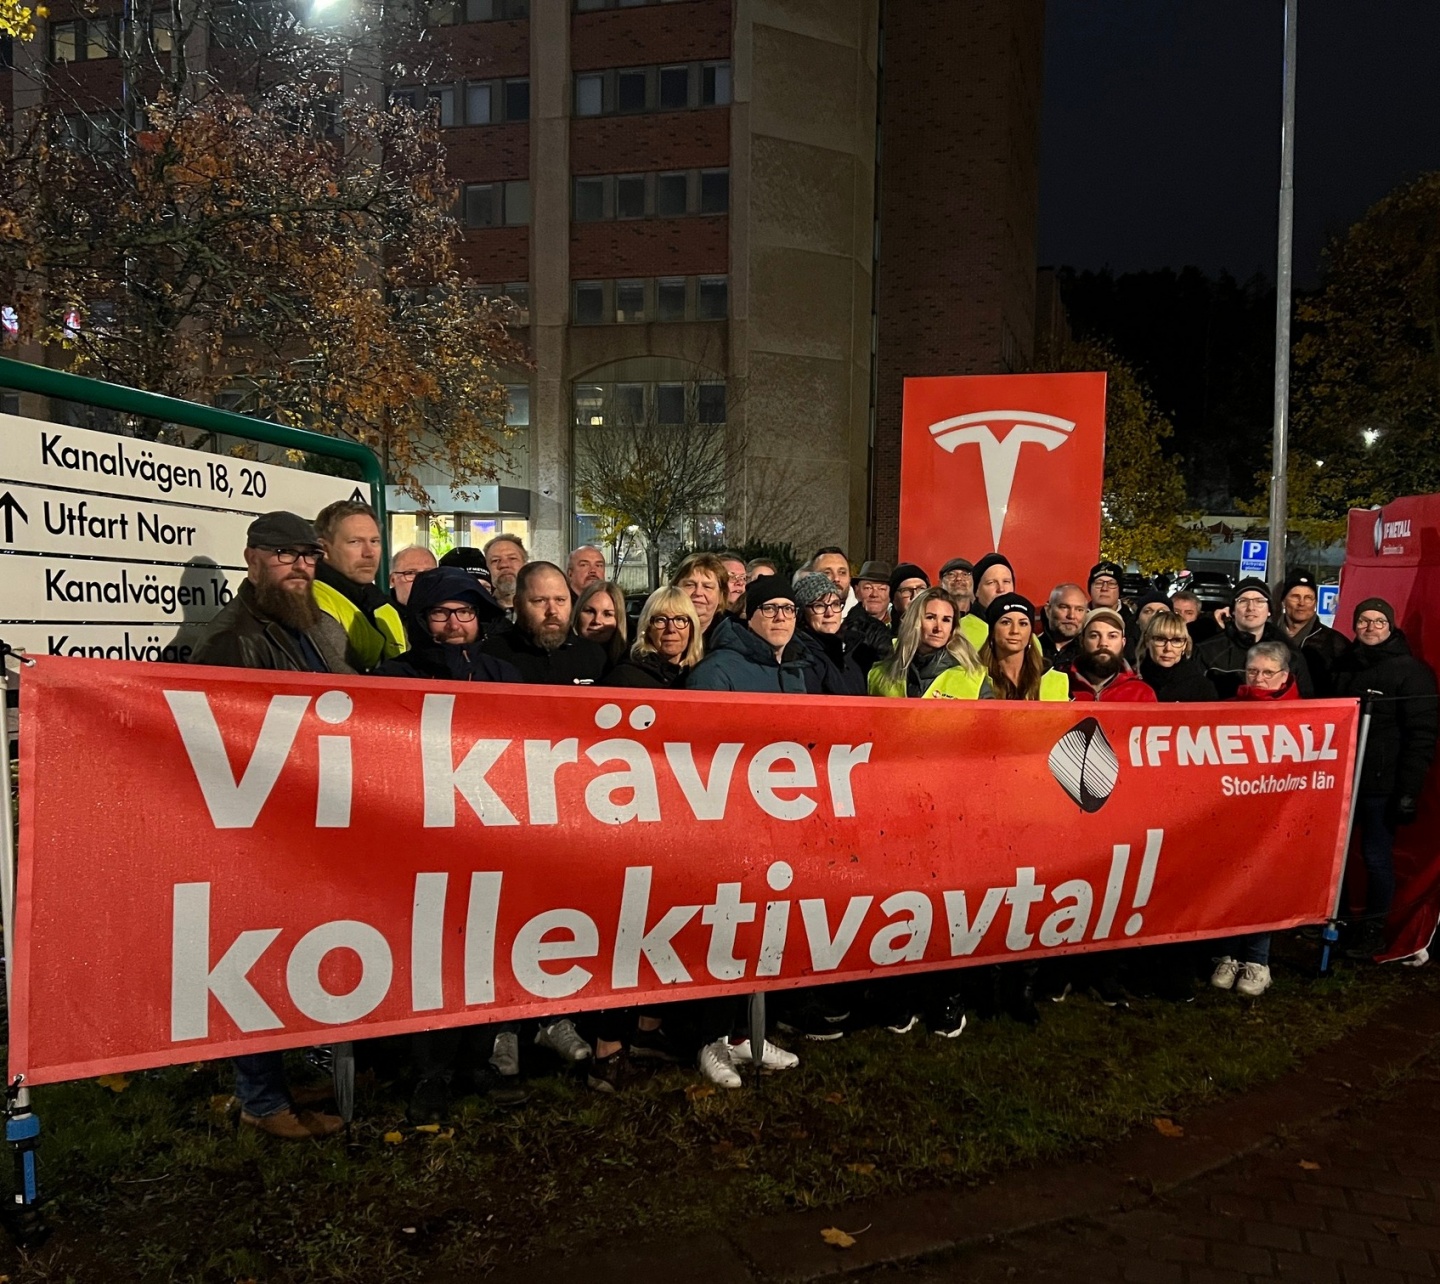 Профсоюз транспортников Швеции объявил забастовку сочувствия Tesla